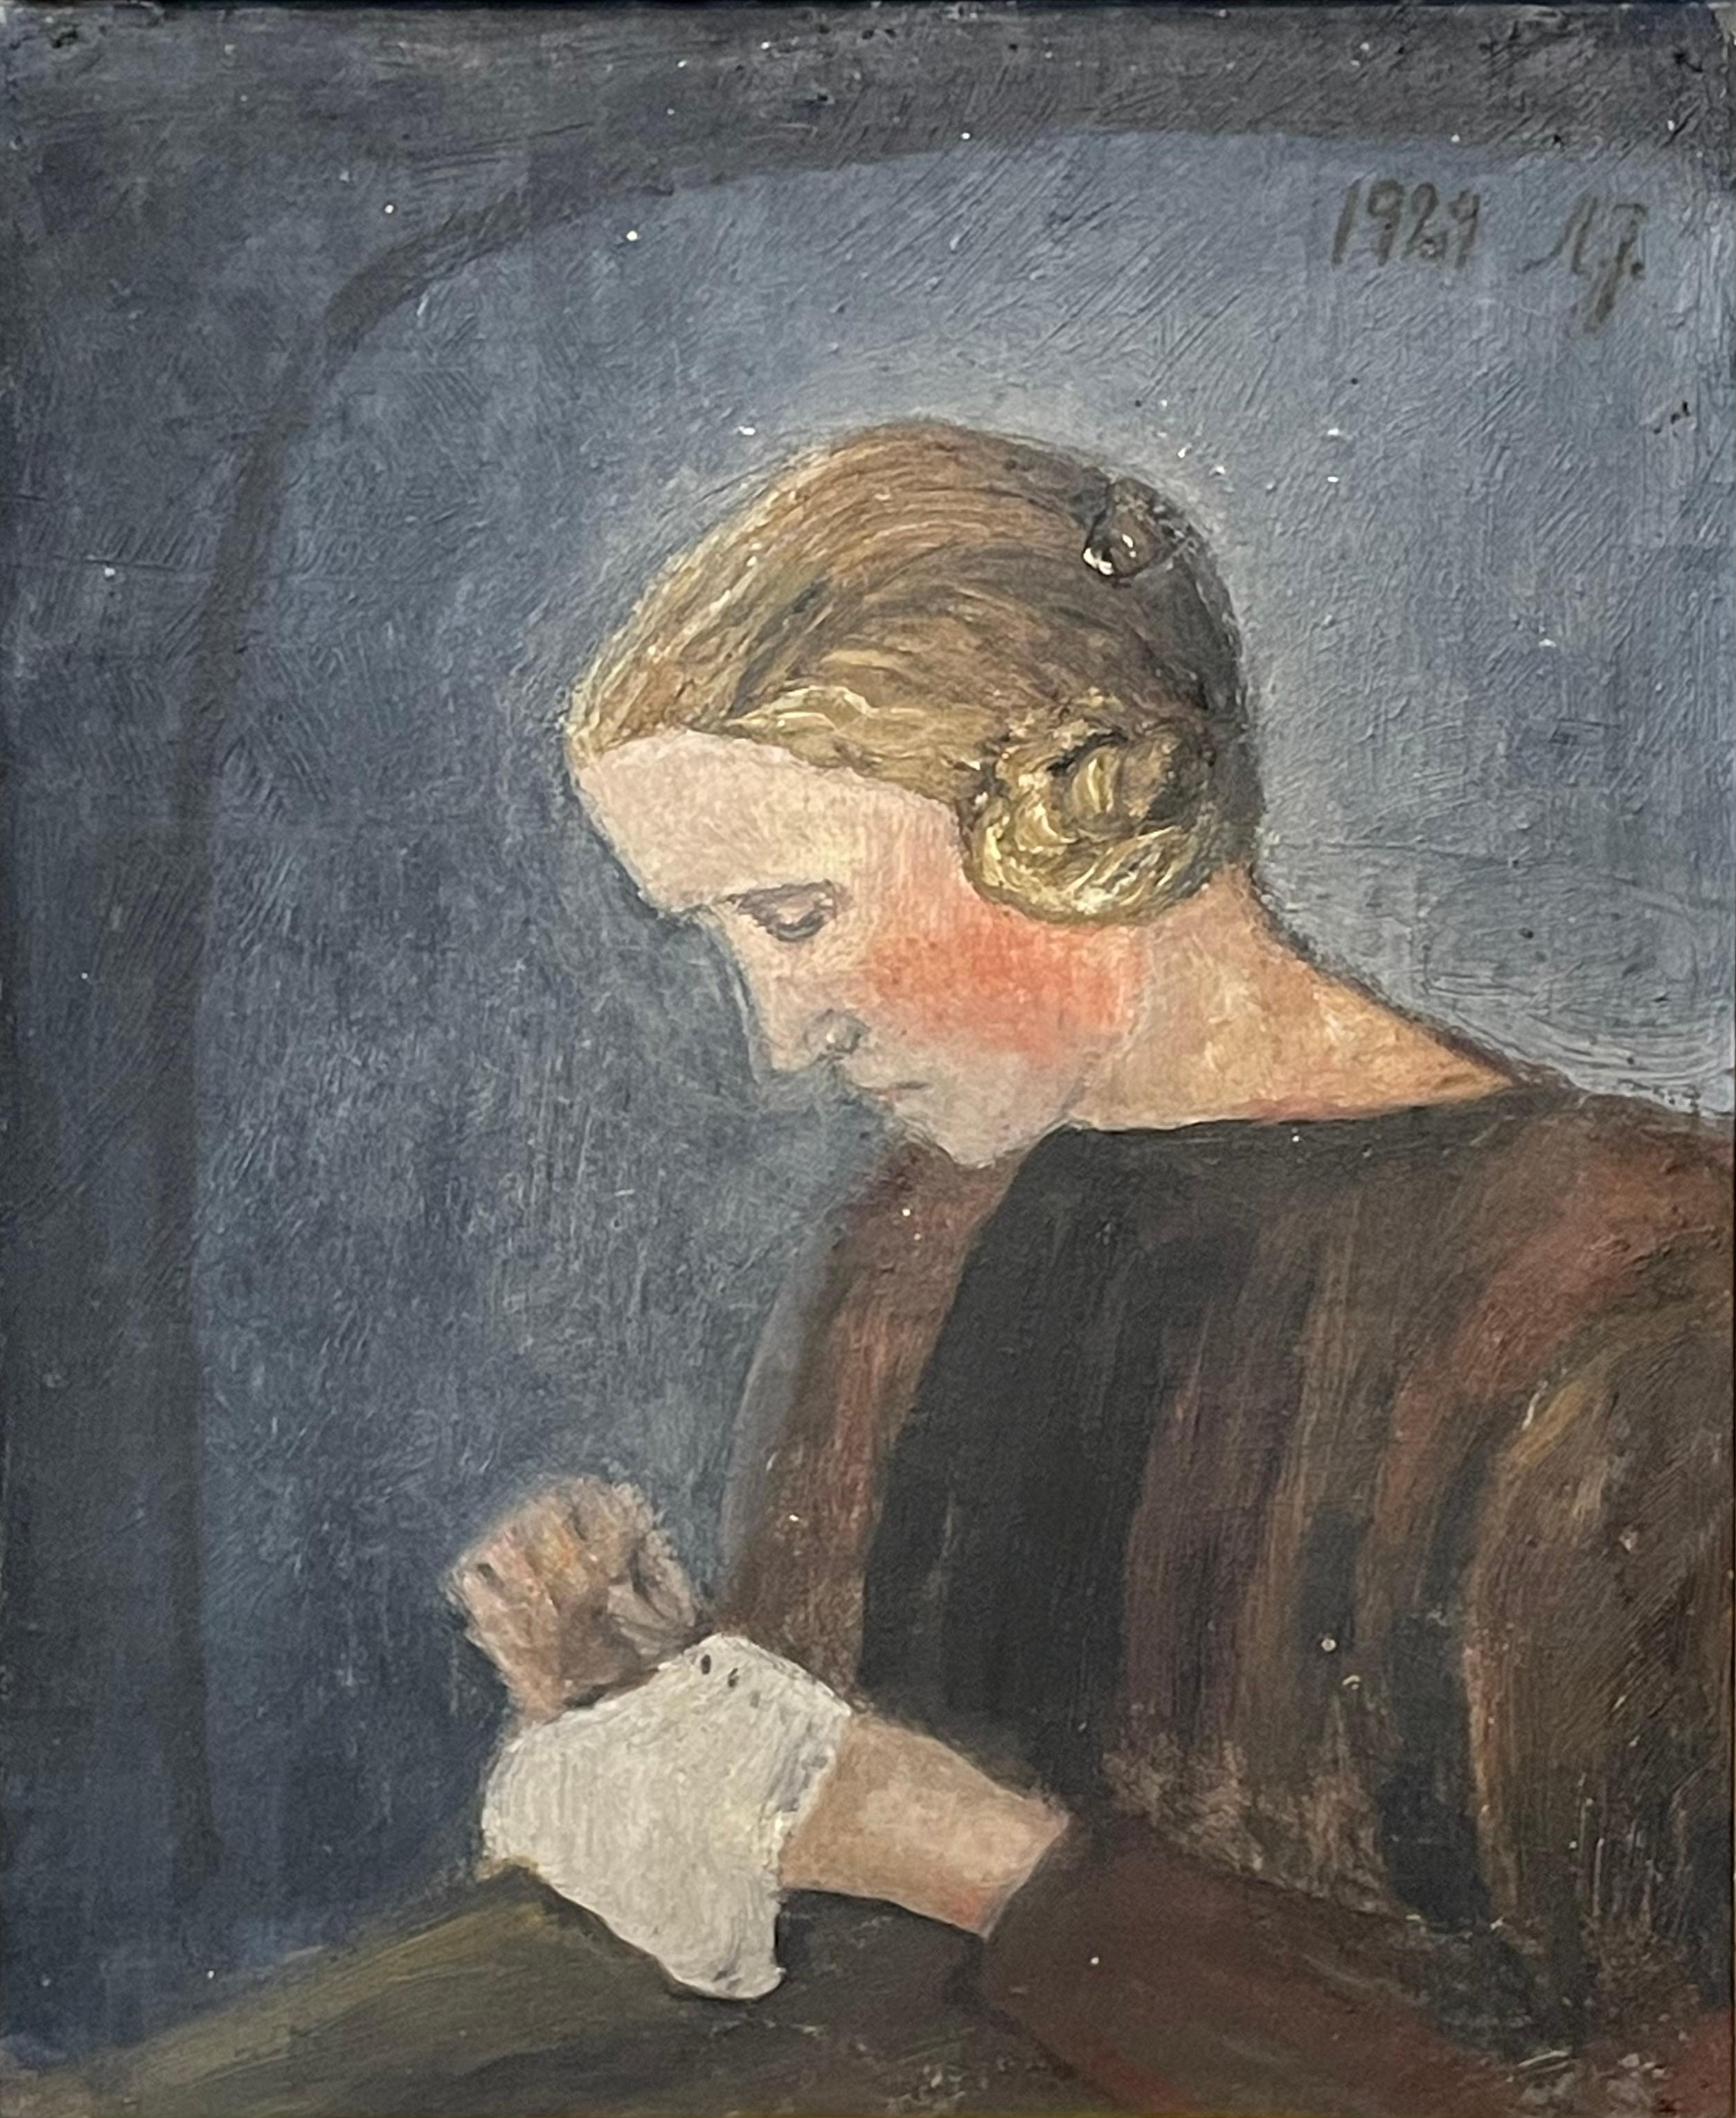 Il s'agit d'une peinture originale à l'huile sur assiette datant de 1929 et provenant du Danemark. Le motif est une femme qui fait des travaux d'aiguille dans un cadre sombre.

Le tableau est signé et daté par l'artiste. Il est encadré dans un cadre